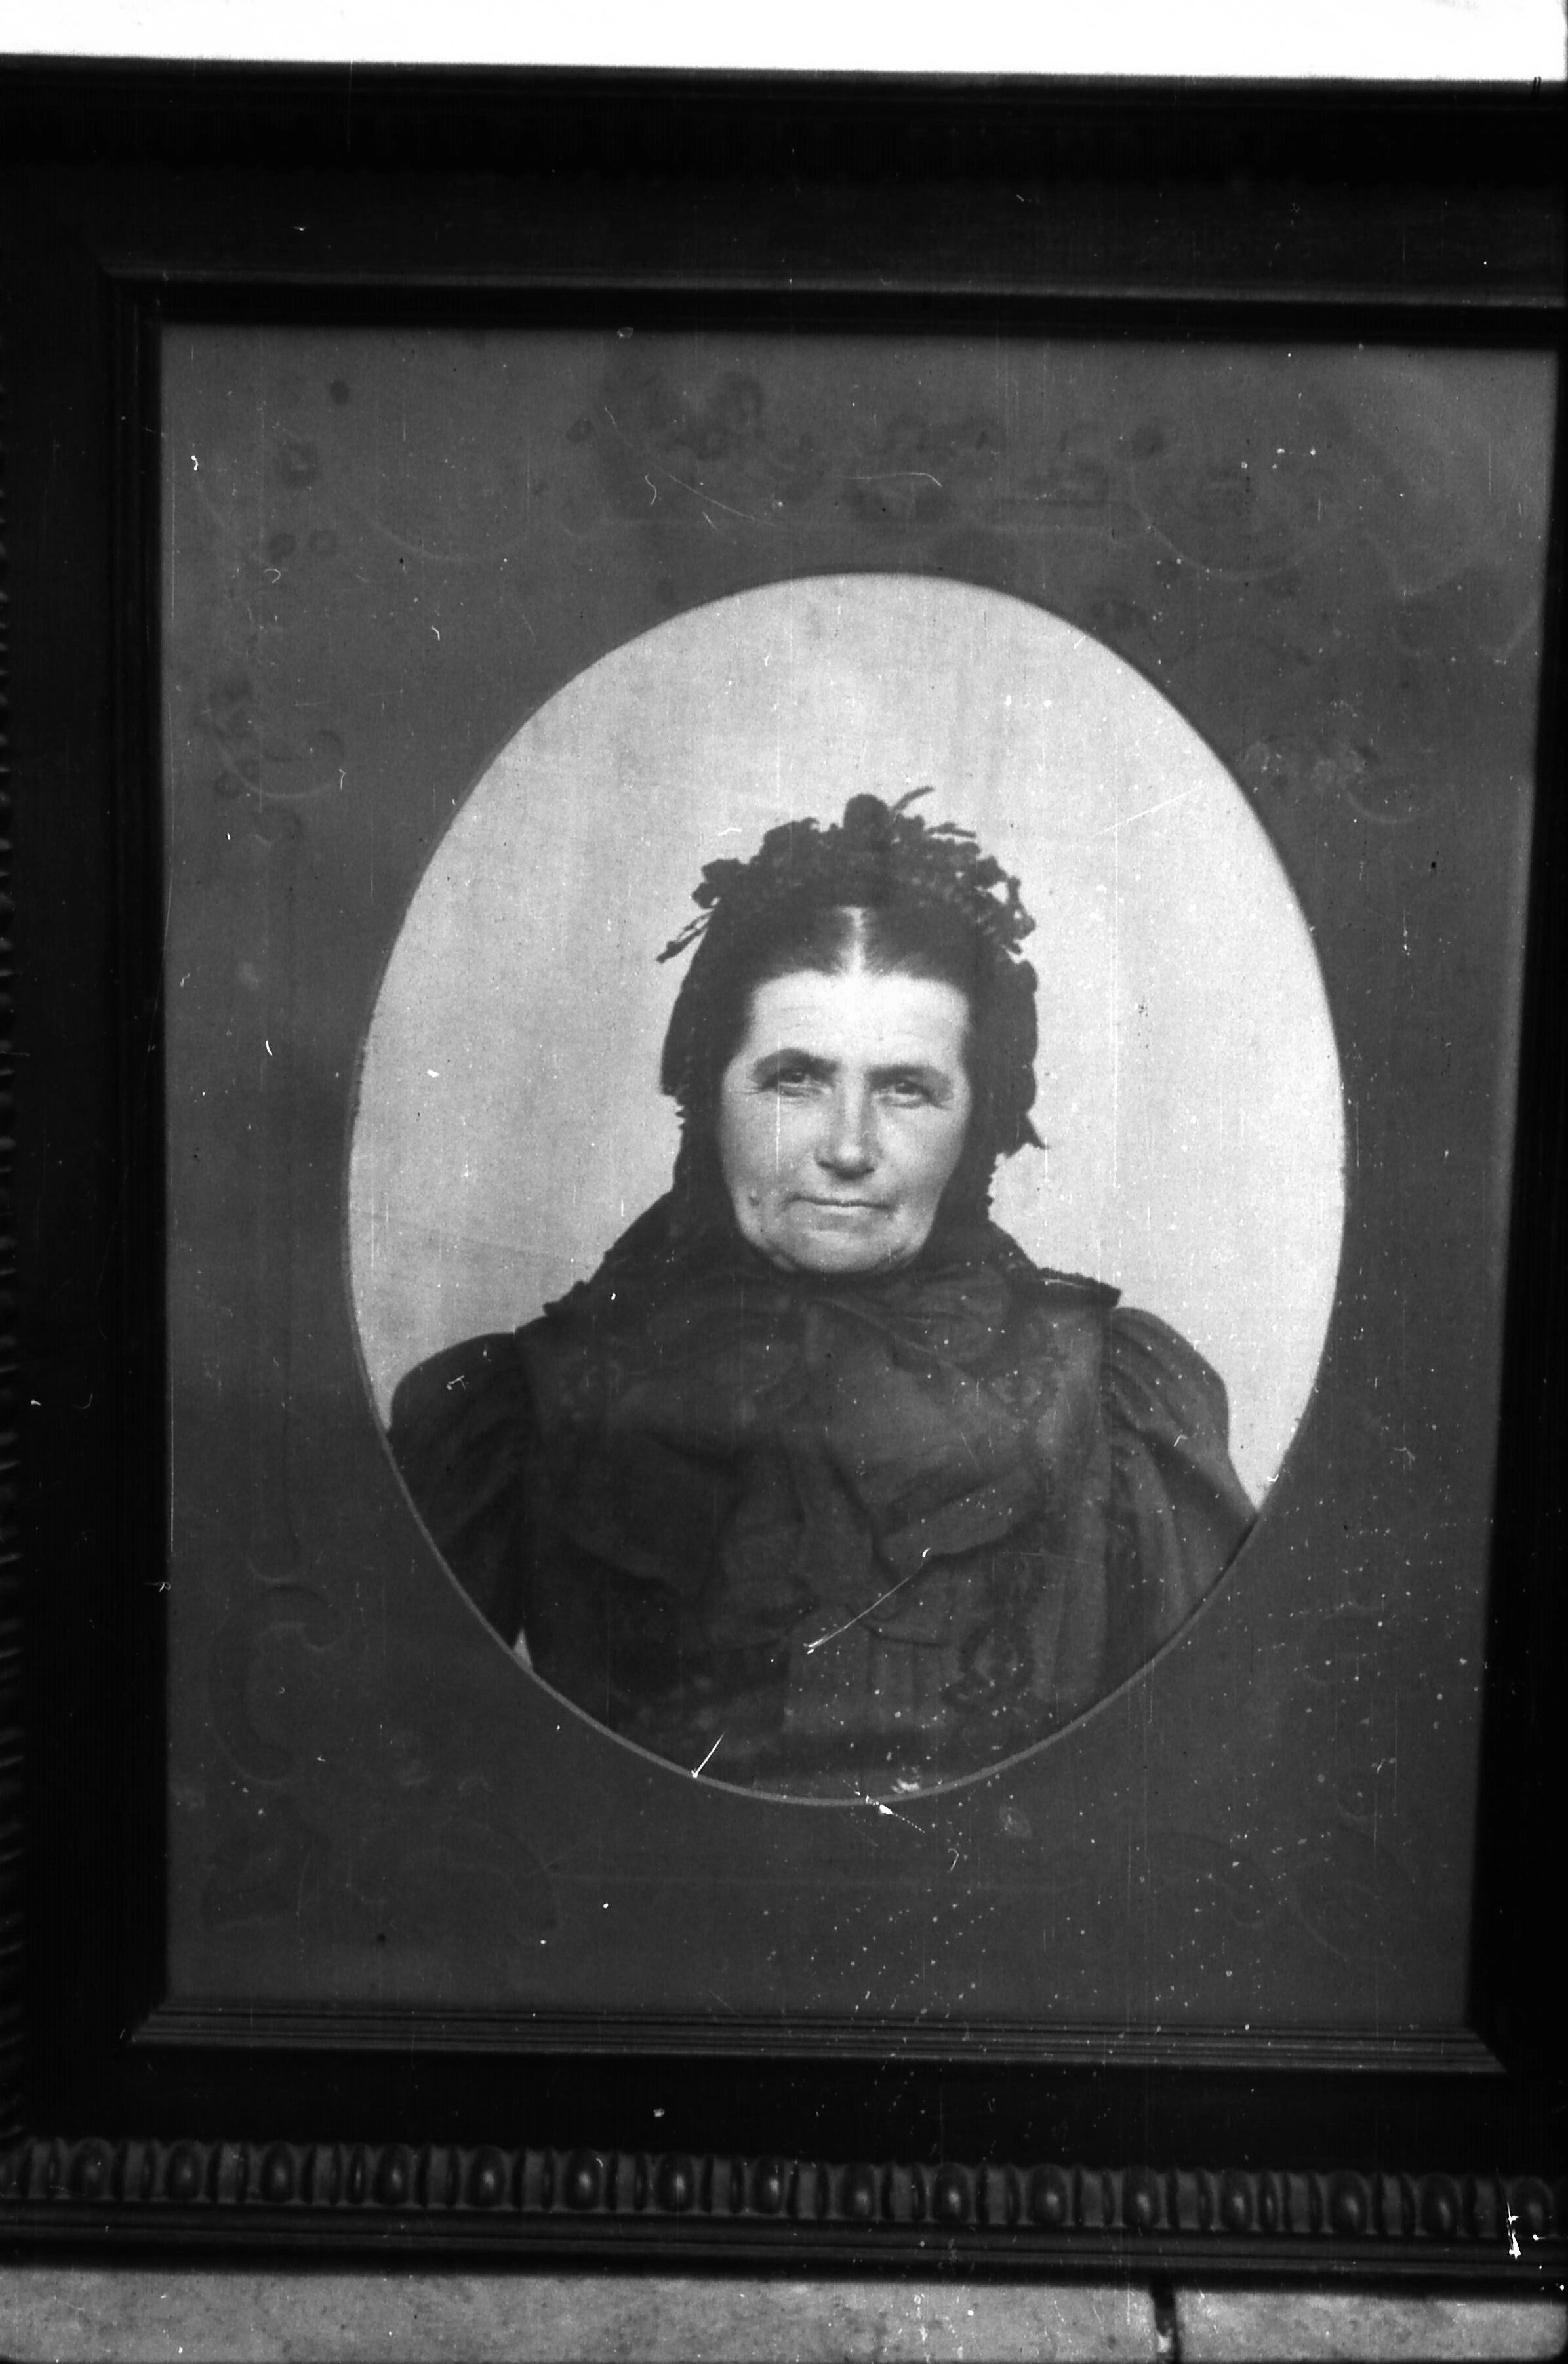 Református asszony főkötőben, 1880-as években készült fénykép, Mészáros Sándorné. (MTA BTK Néprajztudományi Intézet CC BY-NC-SA)